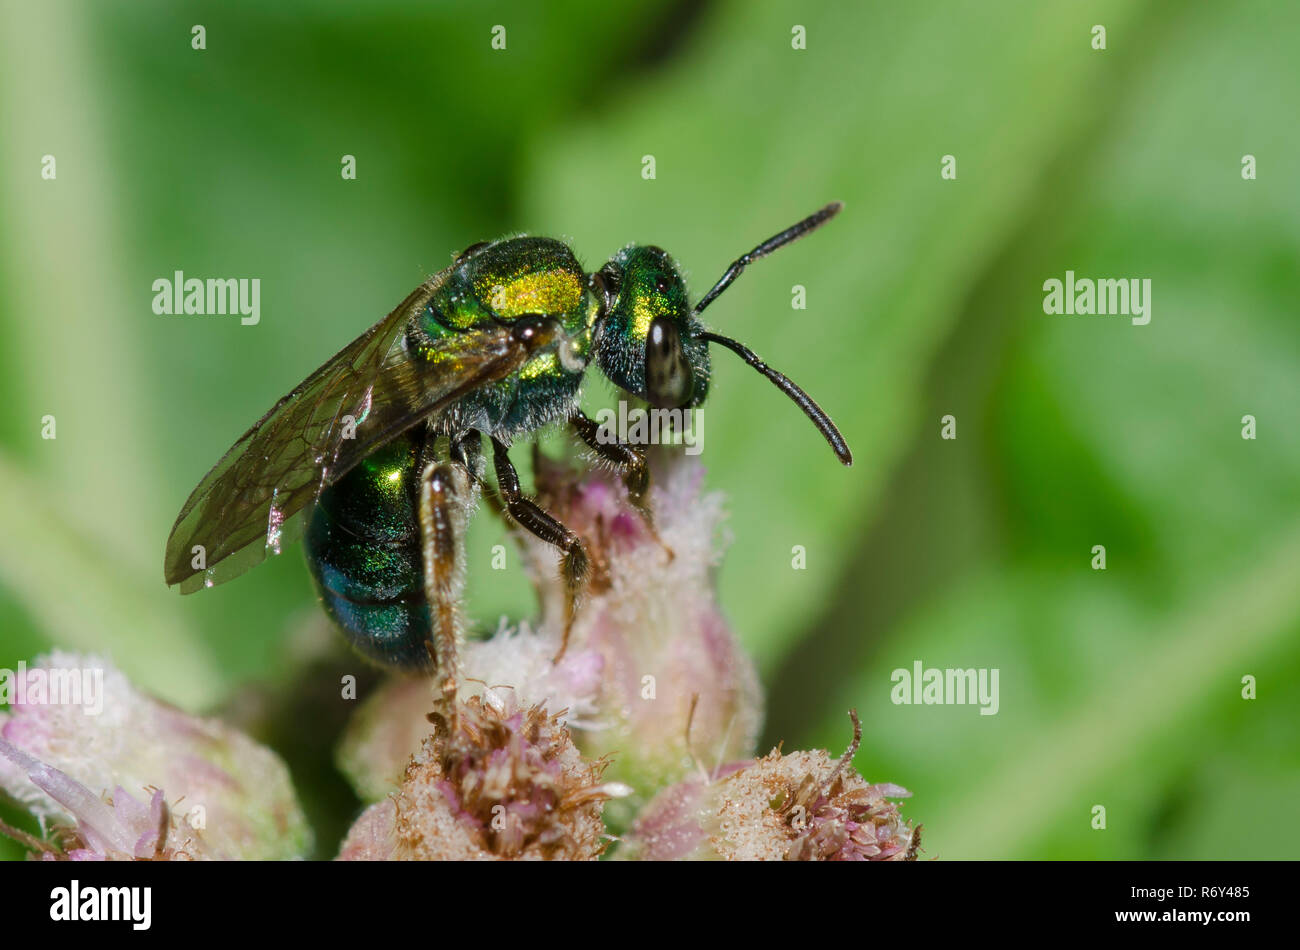 Pure Green Augochlora, Augochlora pura, a type of sweat bee, on Saltmarsh Fleabane, Pluchea odorata Stock Photo